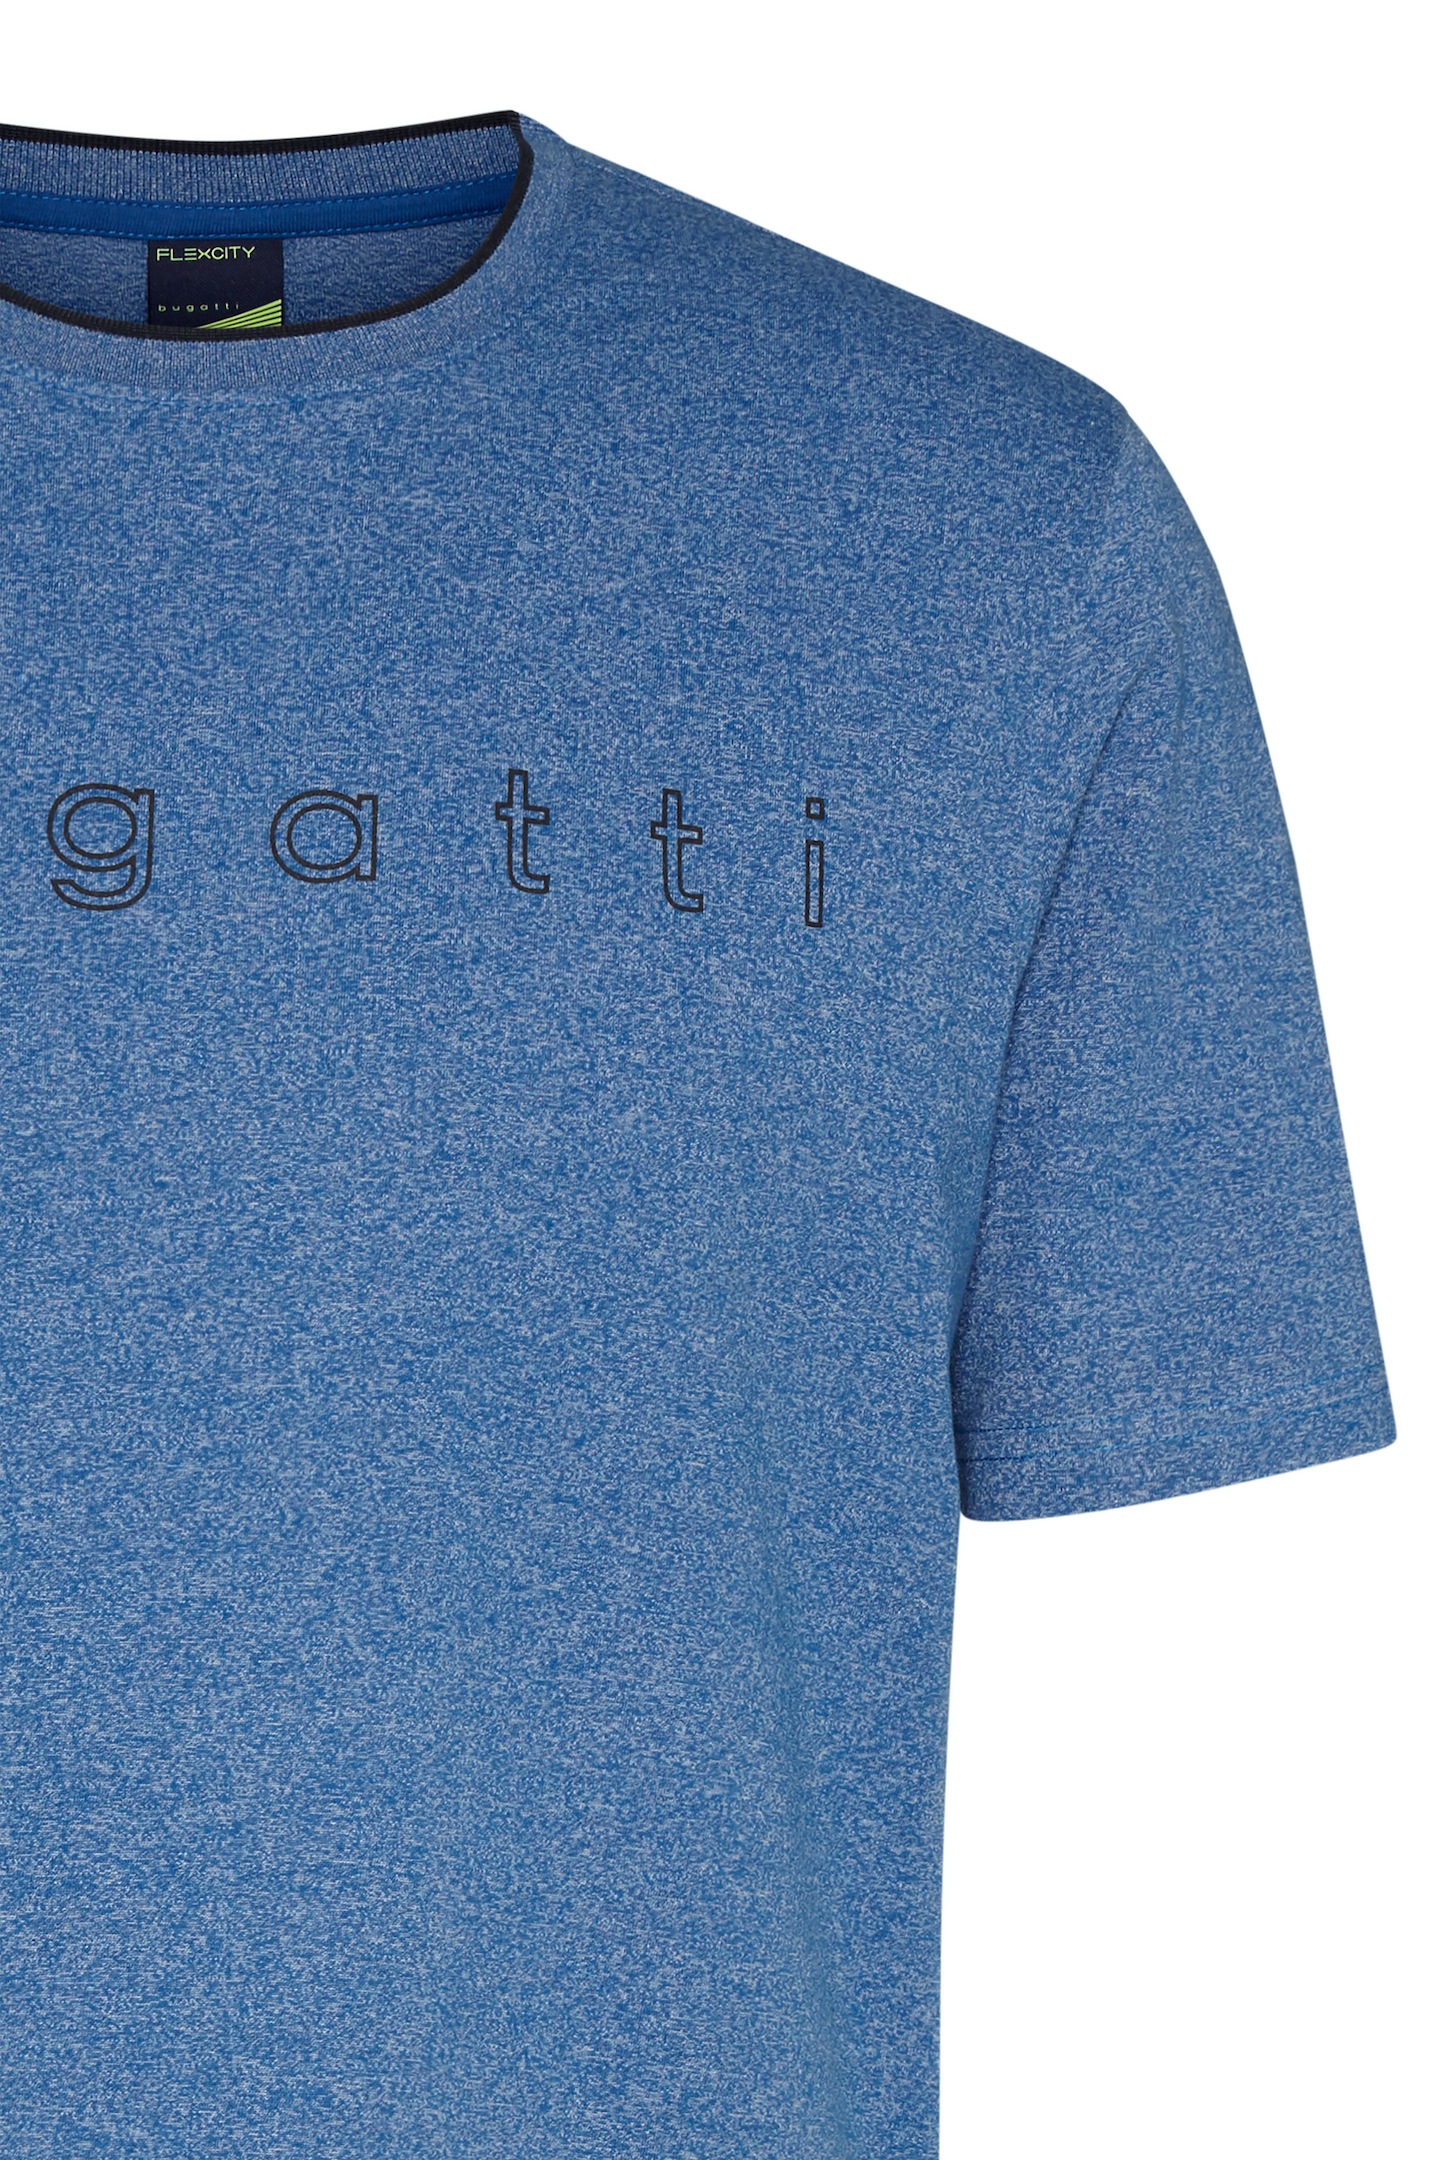 bugatti kaufen mit bugatti Logo-Print T-Shirt, großem online